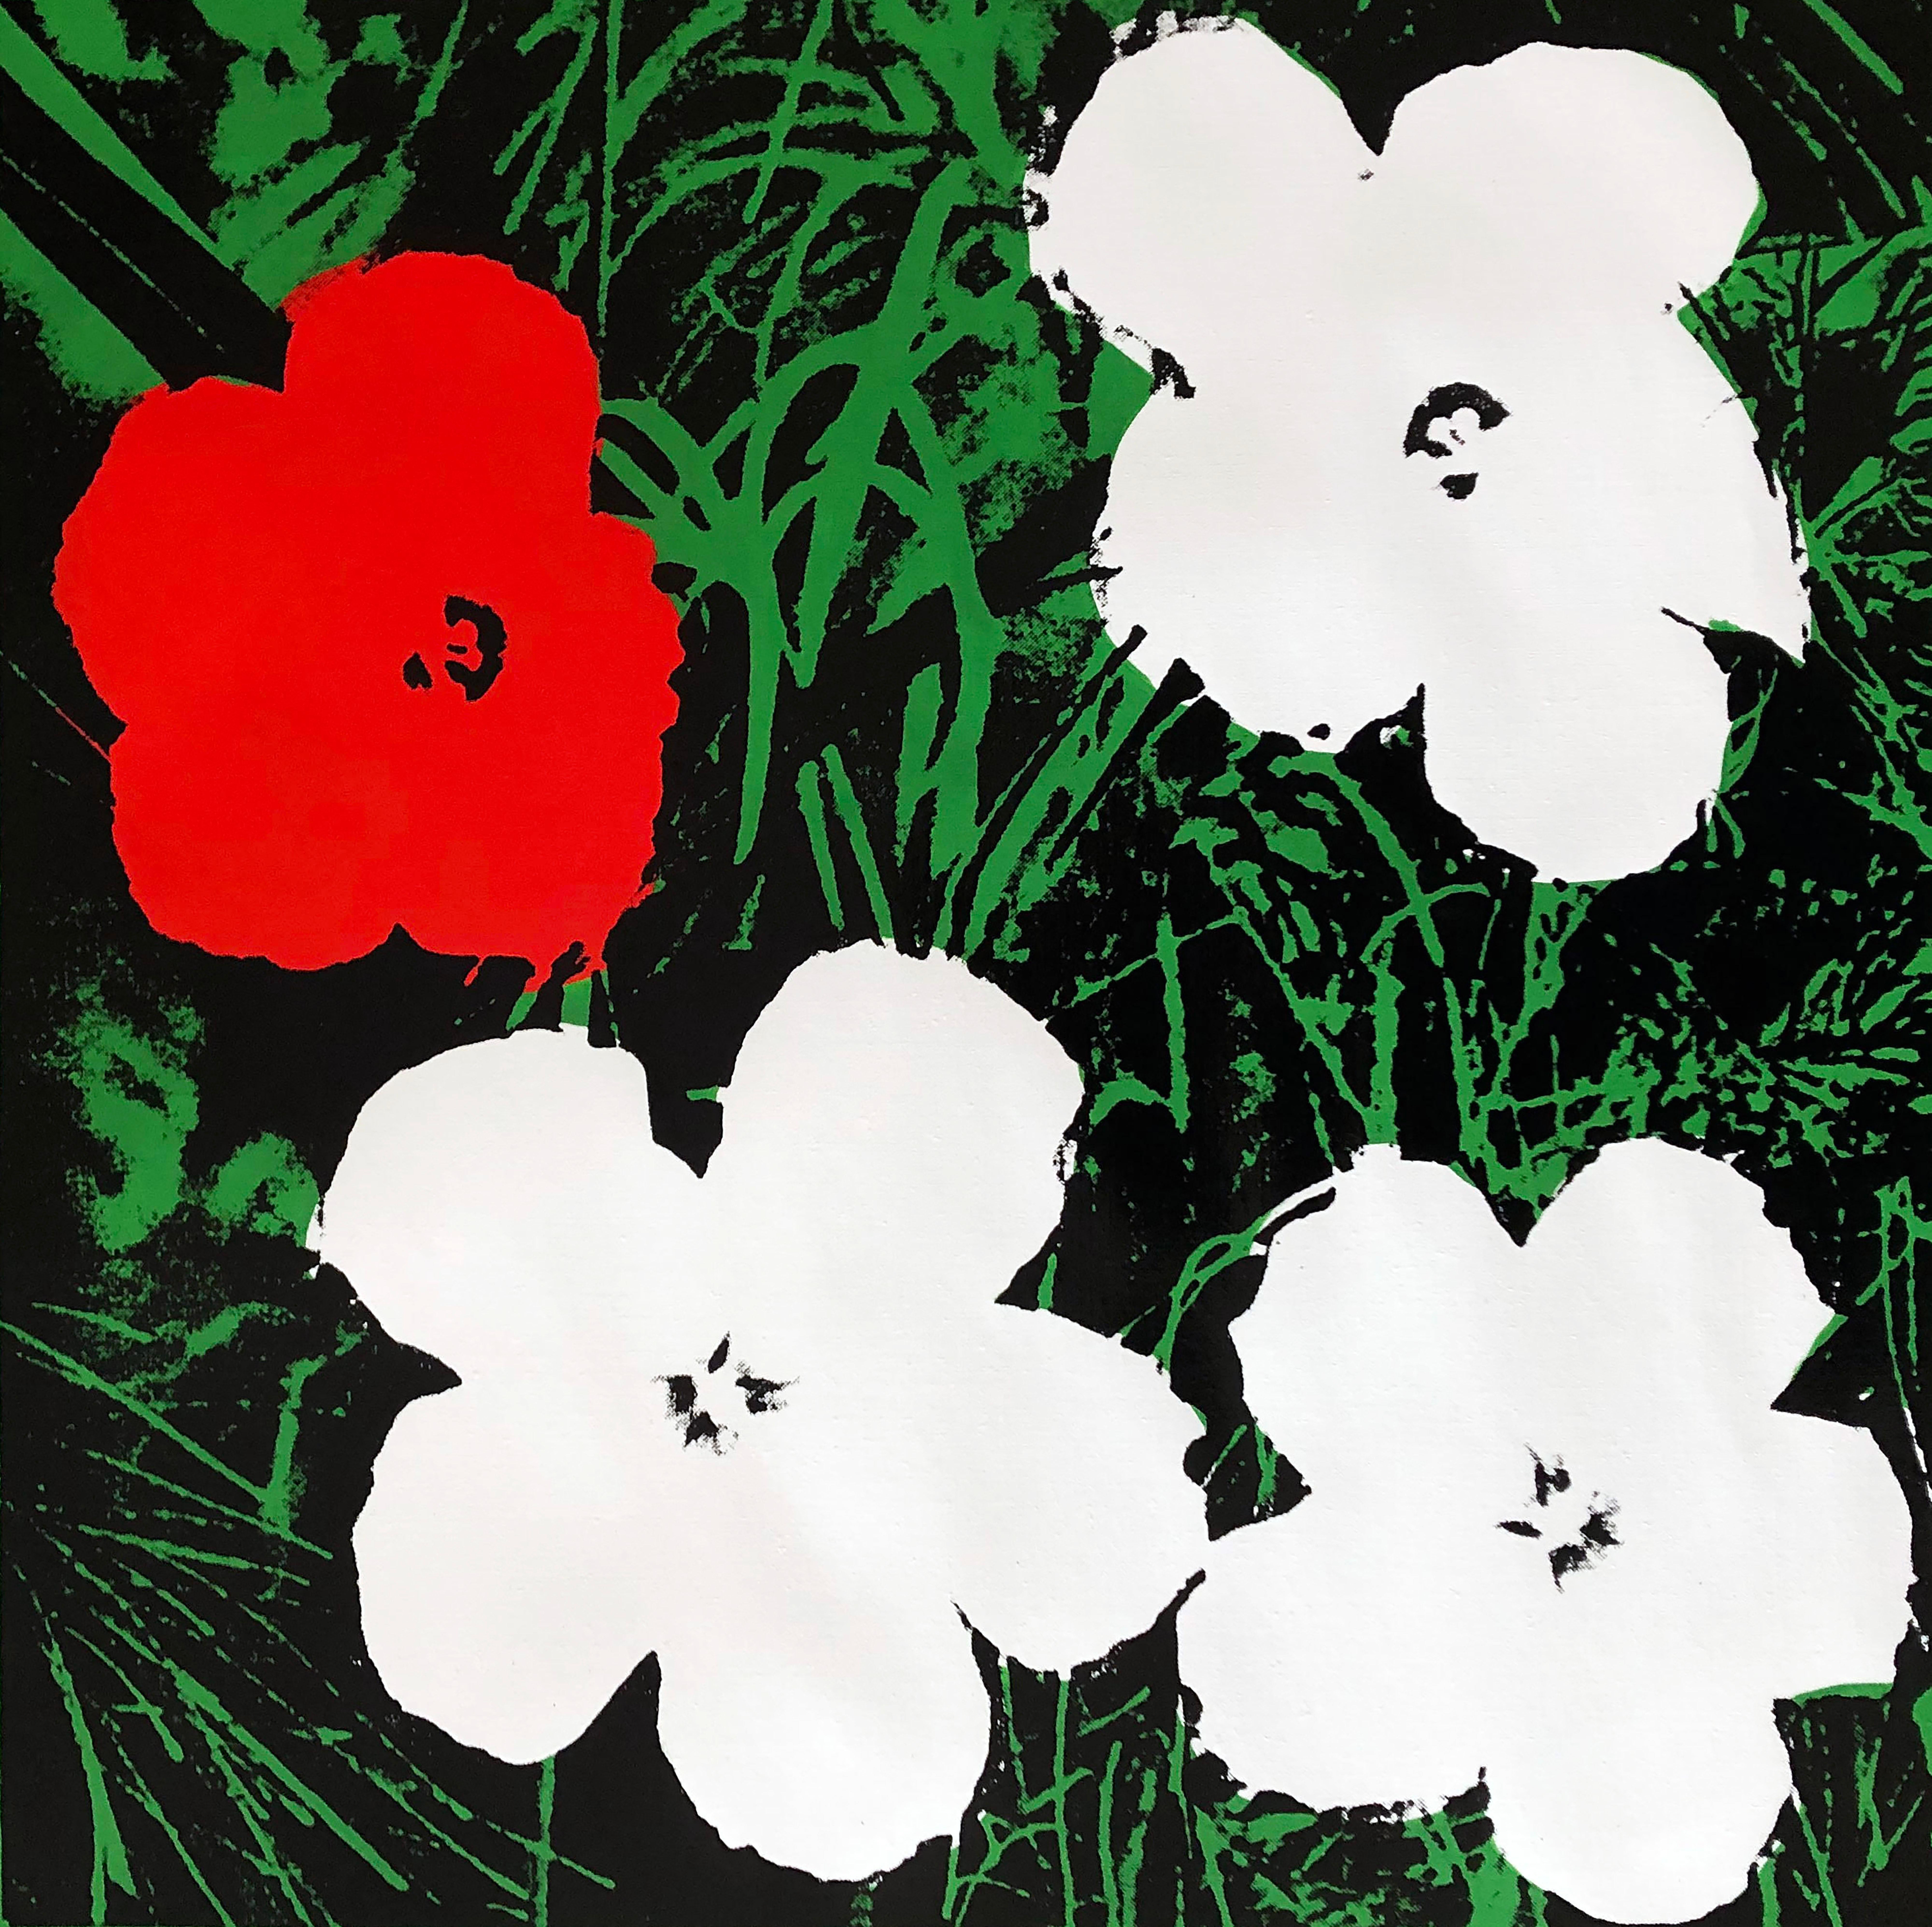 Verweigerte Warhol-Blumen, (Weiß & Rot) Siebdruck Leinengemälde von Charles Lutz
Siebdruck und Acryl auf Leinen mit Verweigerungsstempel des Andy Warhol Art Authentication Board. 
24 x 24" Zoll 
2008

Lutz' Serie "Warhol Denied" aus dem Jahr 2007